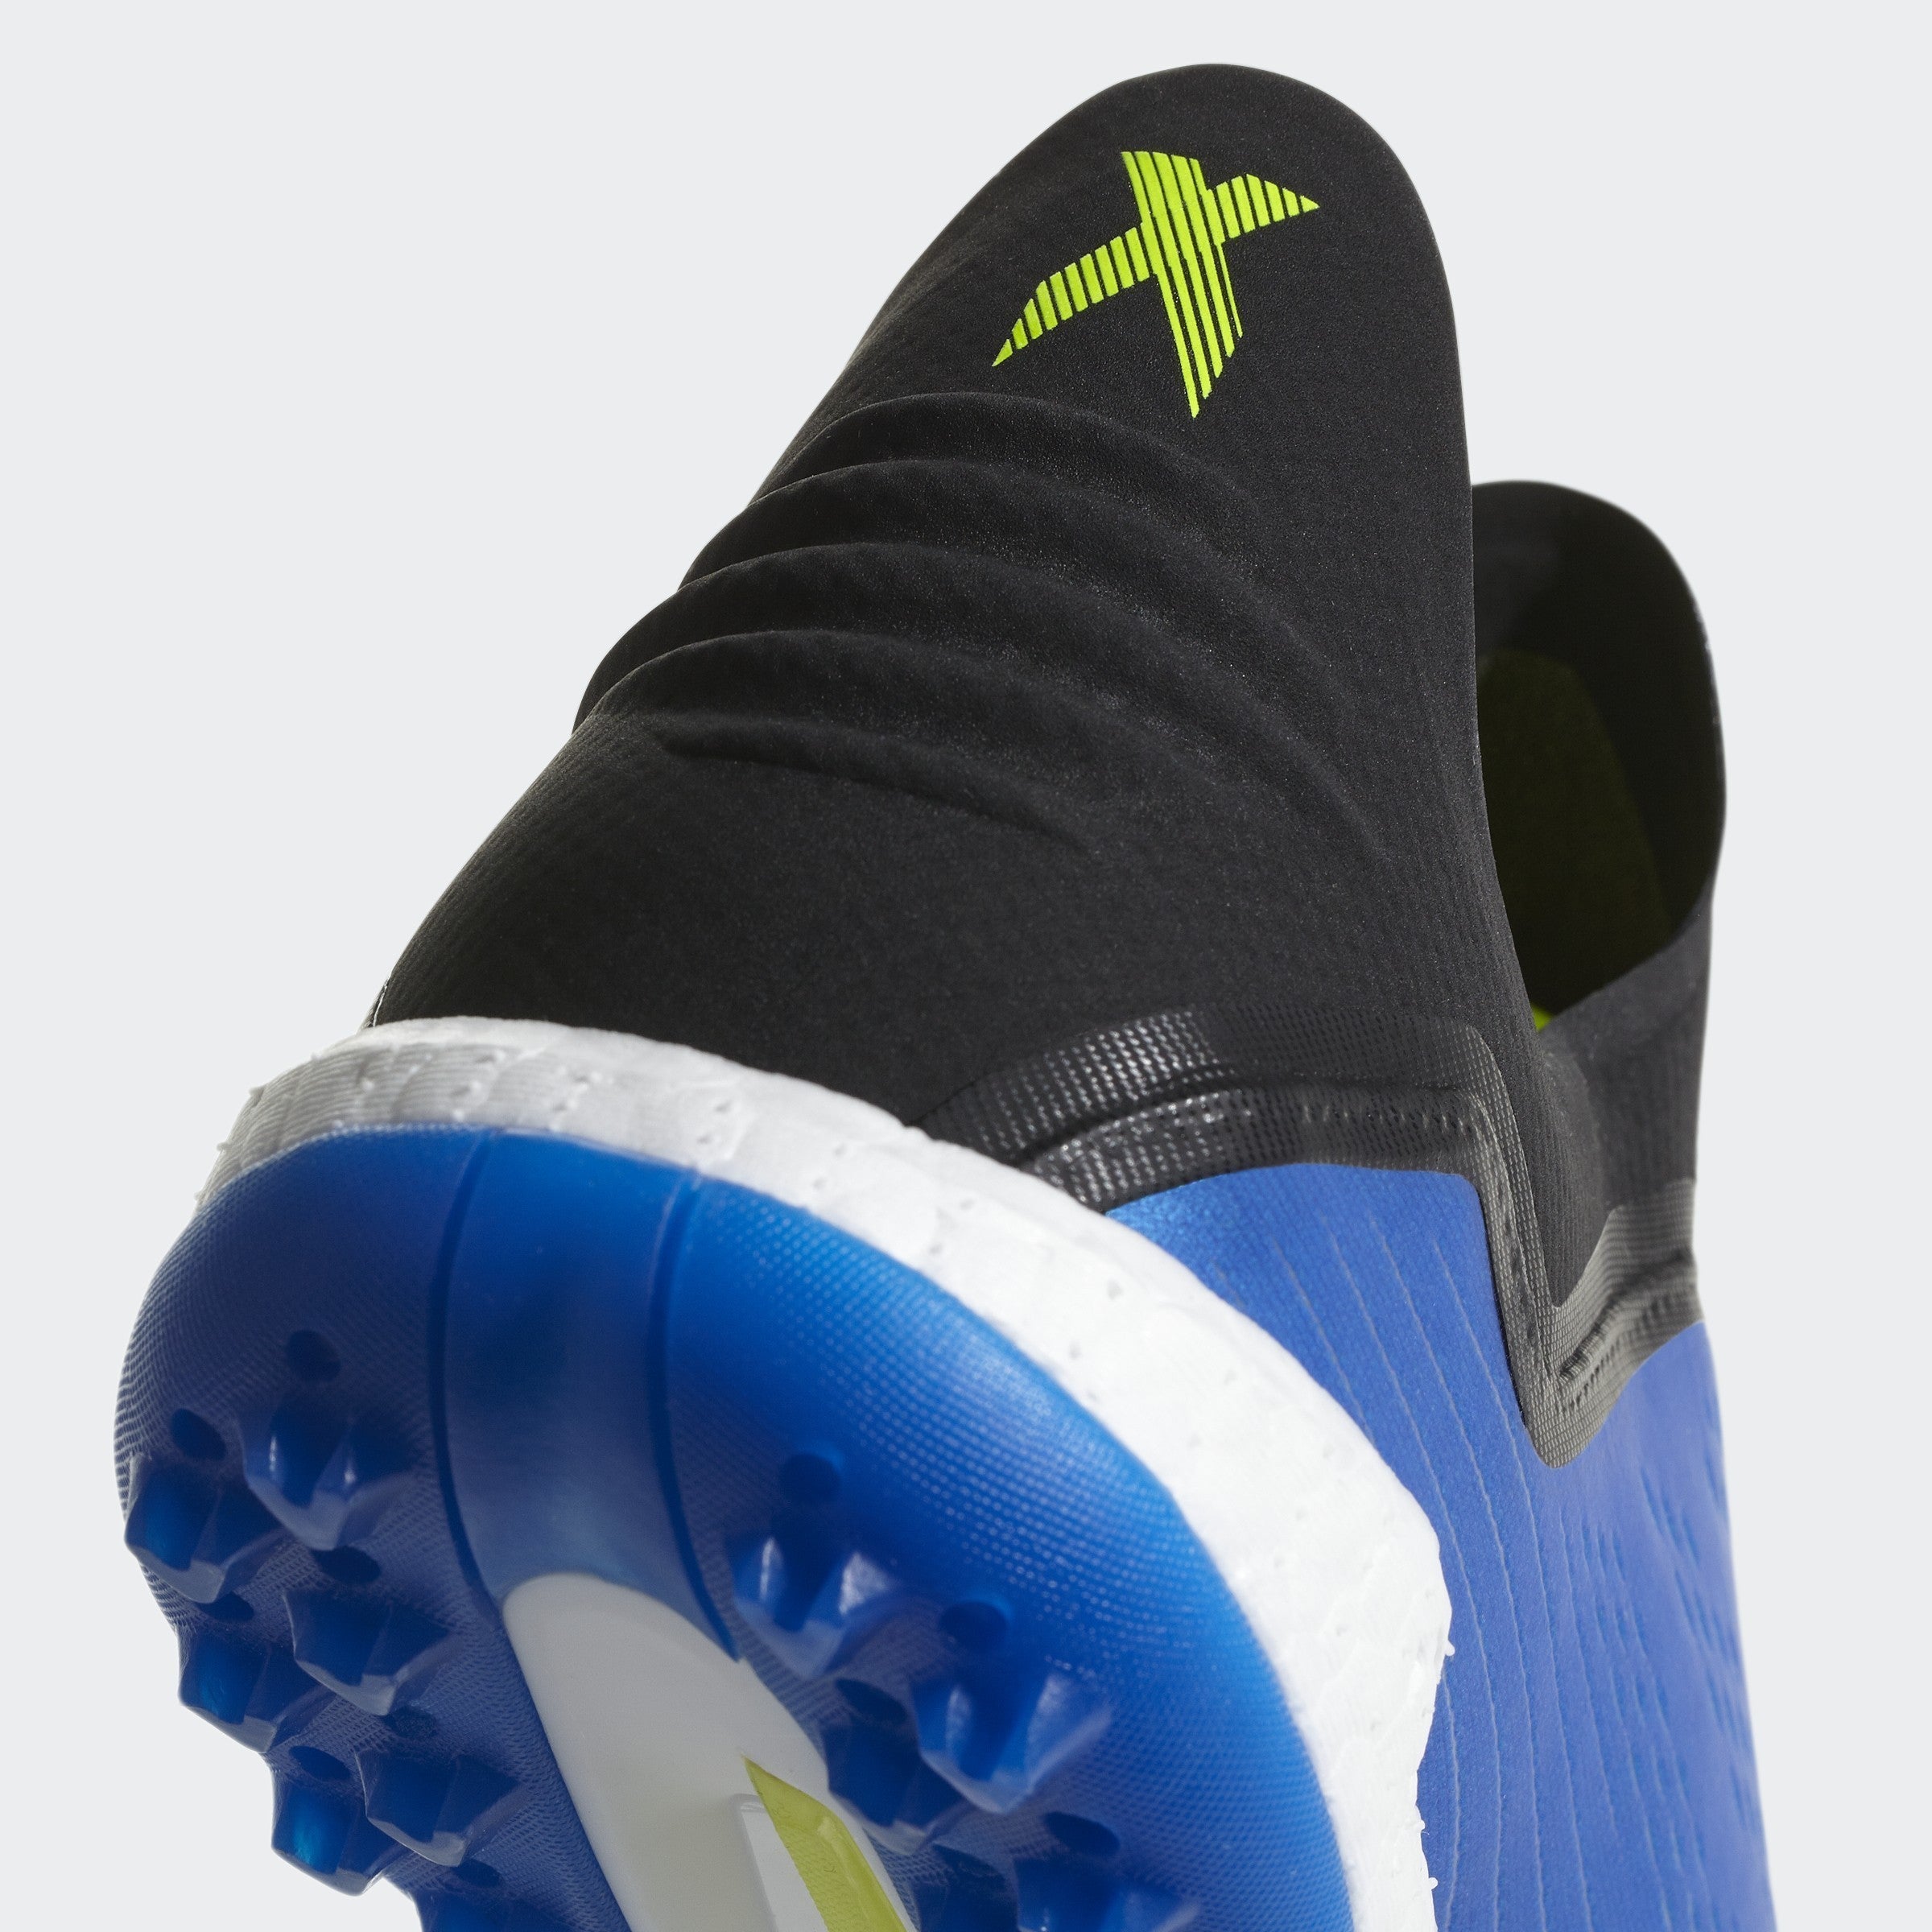 Pelágico Explosivos Problema Men's X Tango 18 + TF Soccer Shoes - Blue Solar/Yellow Core/Black